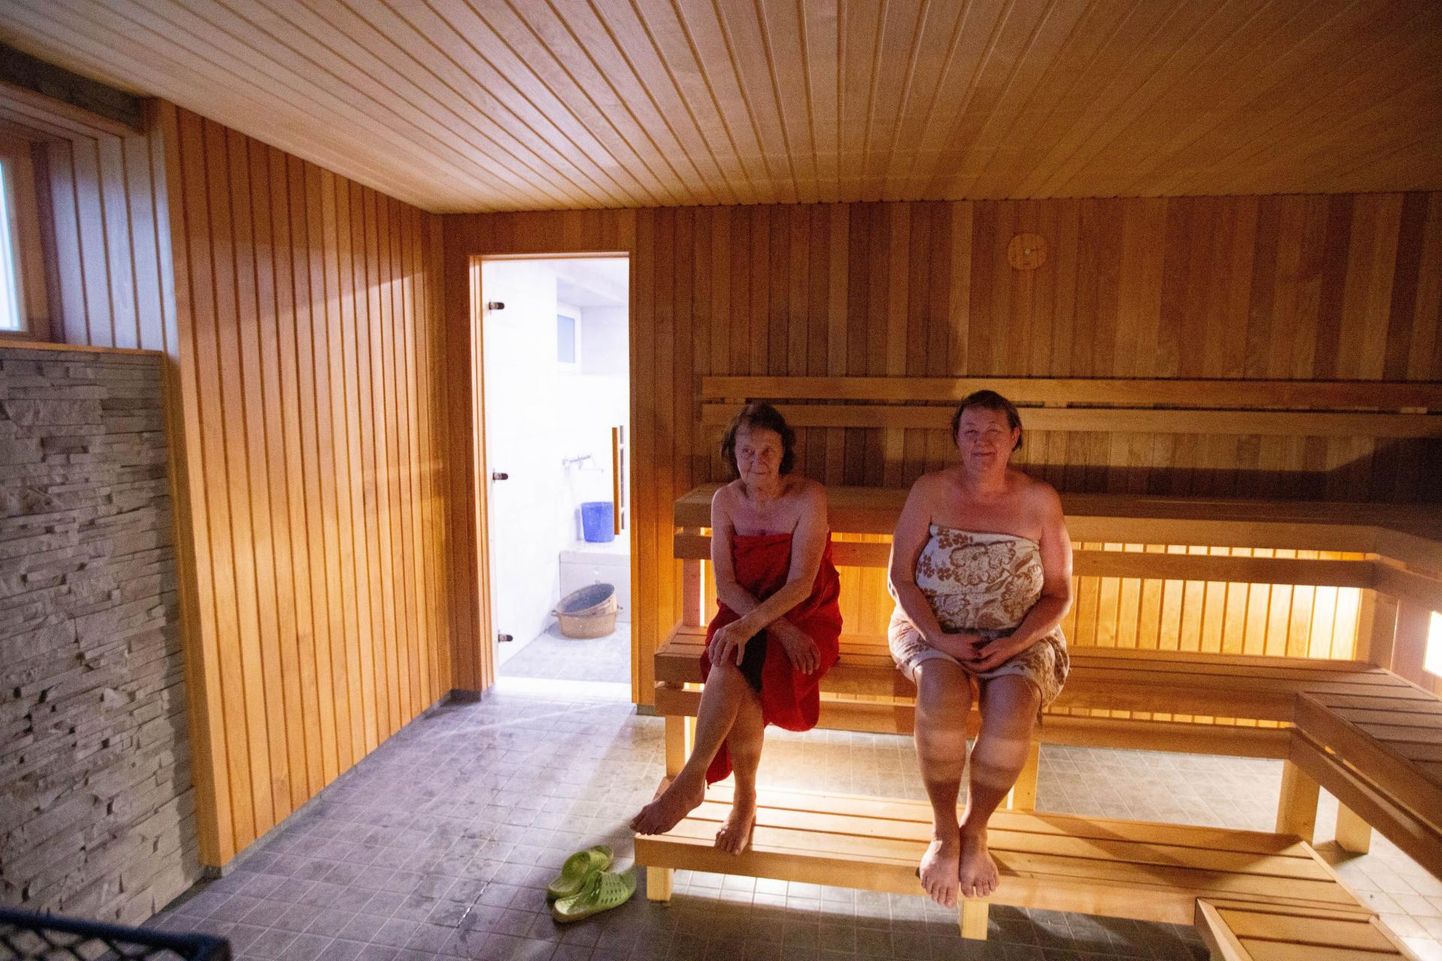 Viru-Nigula uus ja uhke saun on valmis. Jõulukuu esimesel laupäeval võttis esimesel saunapäeval koos tütrega leili 90-aastane Virve Sipria (vasakul).